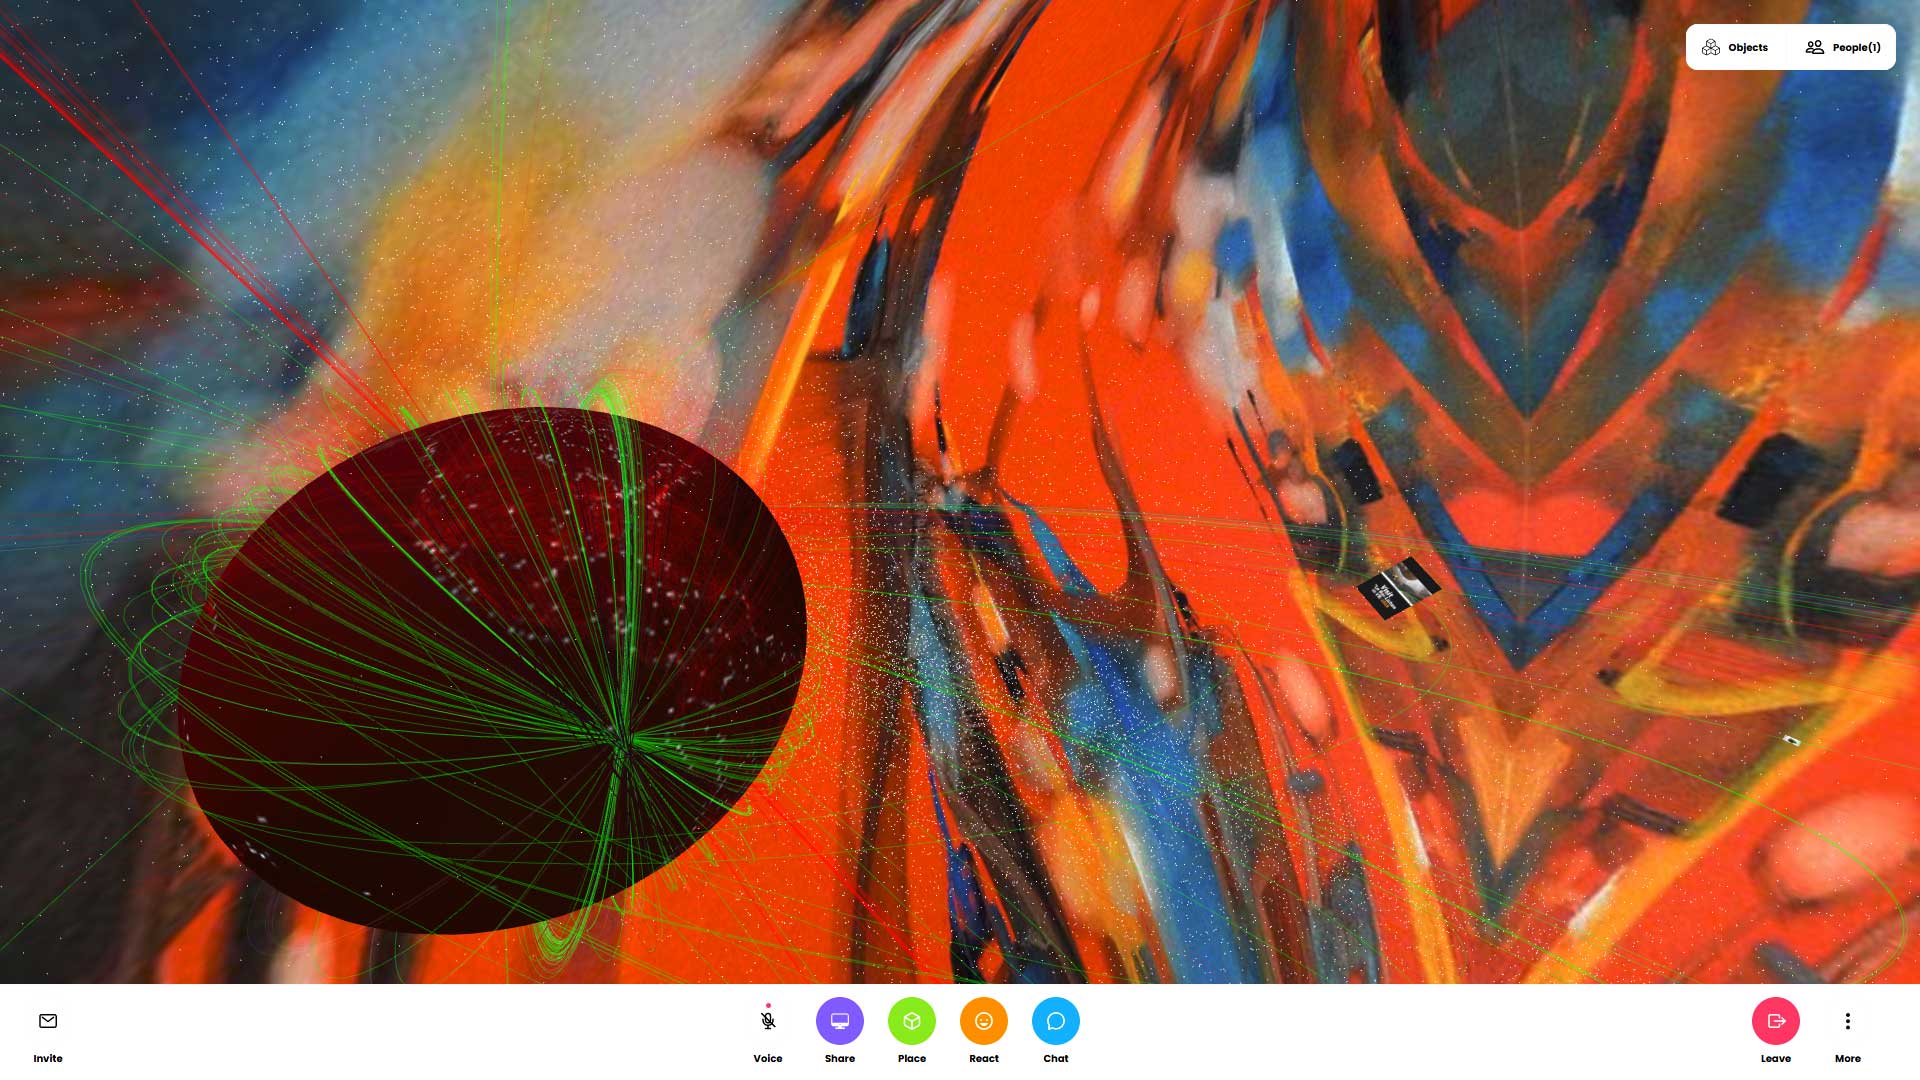 Exposée en réalité virtuelle au cœur des questions que posent l'intrication de l'espace et du temps, l'électron quantique et l'attracteur étrange accueuillent "Elec-tree-city" un tableau à l'Huile sur toile de Jc Tanguy